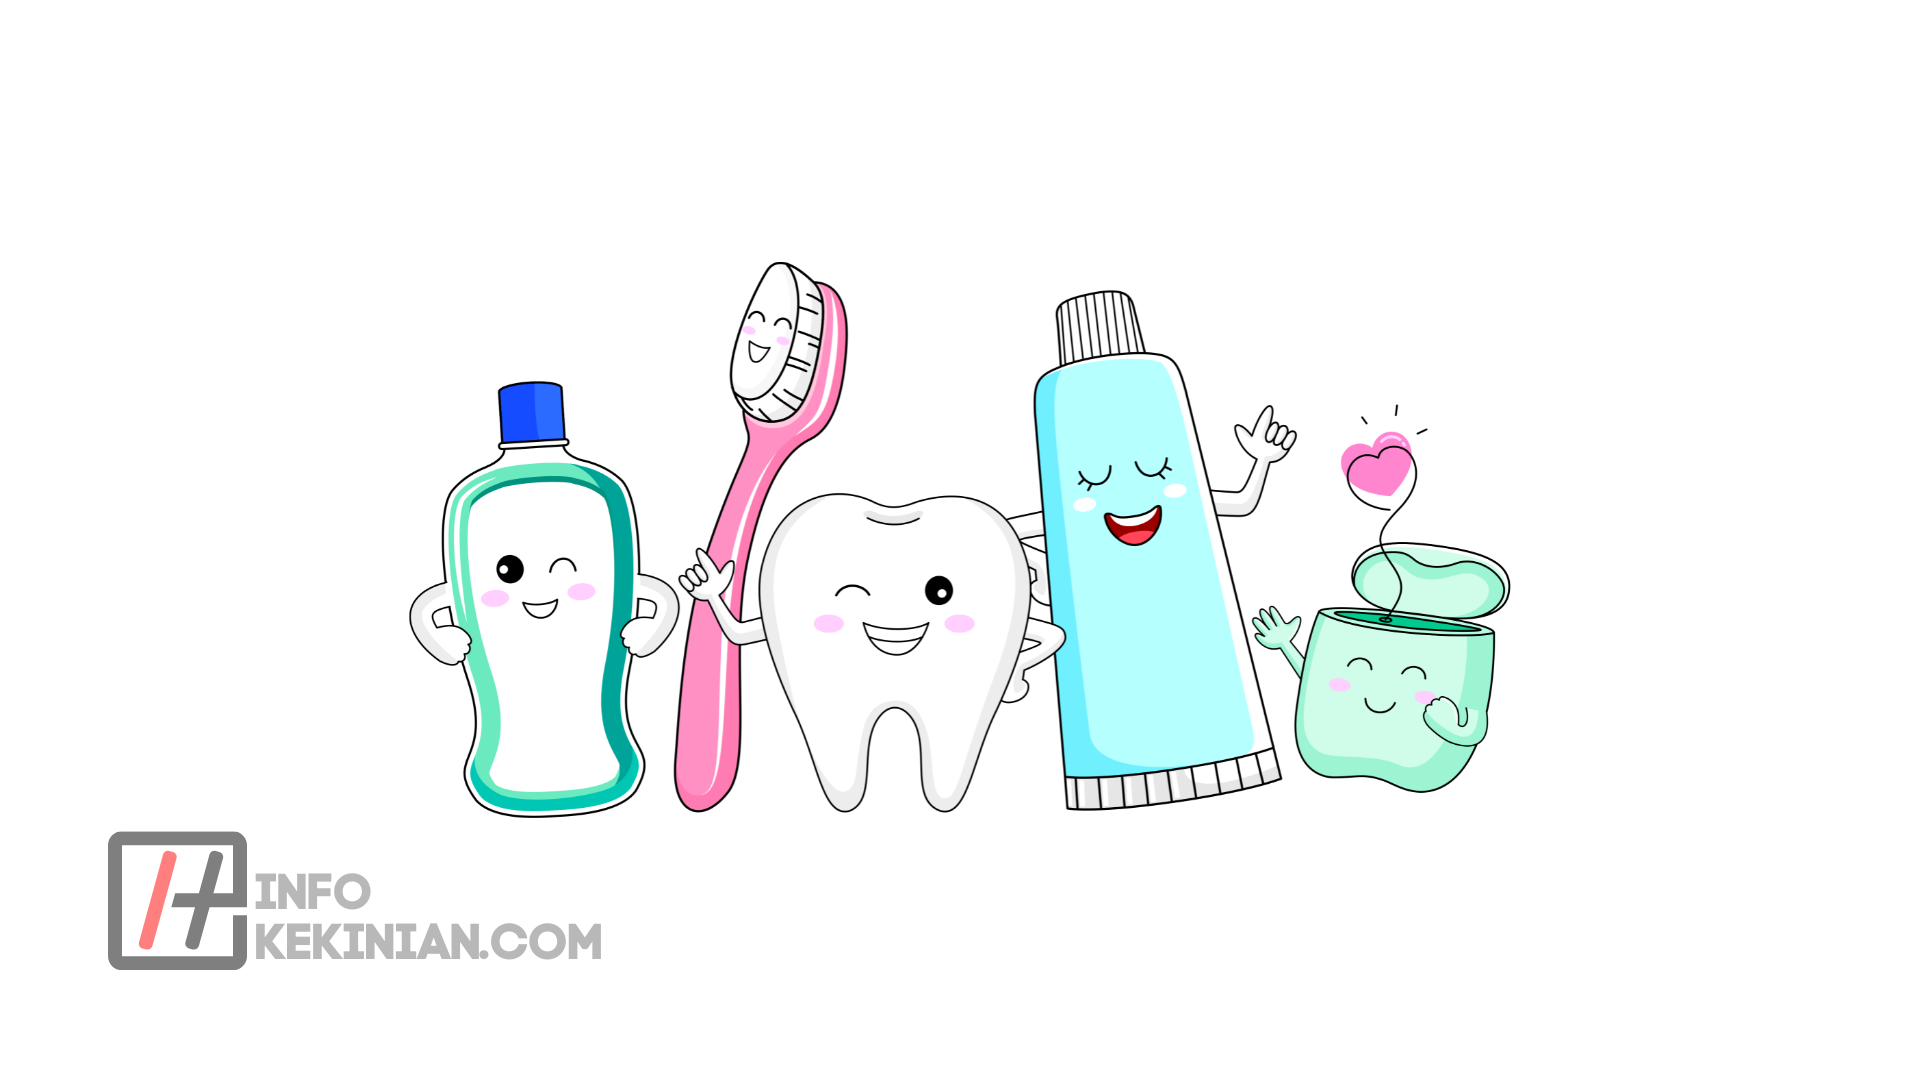 19 façons de blanchir les dents naturellement